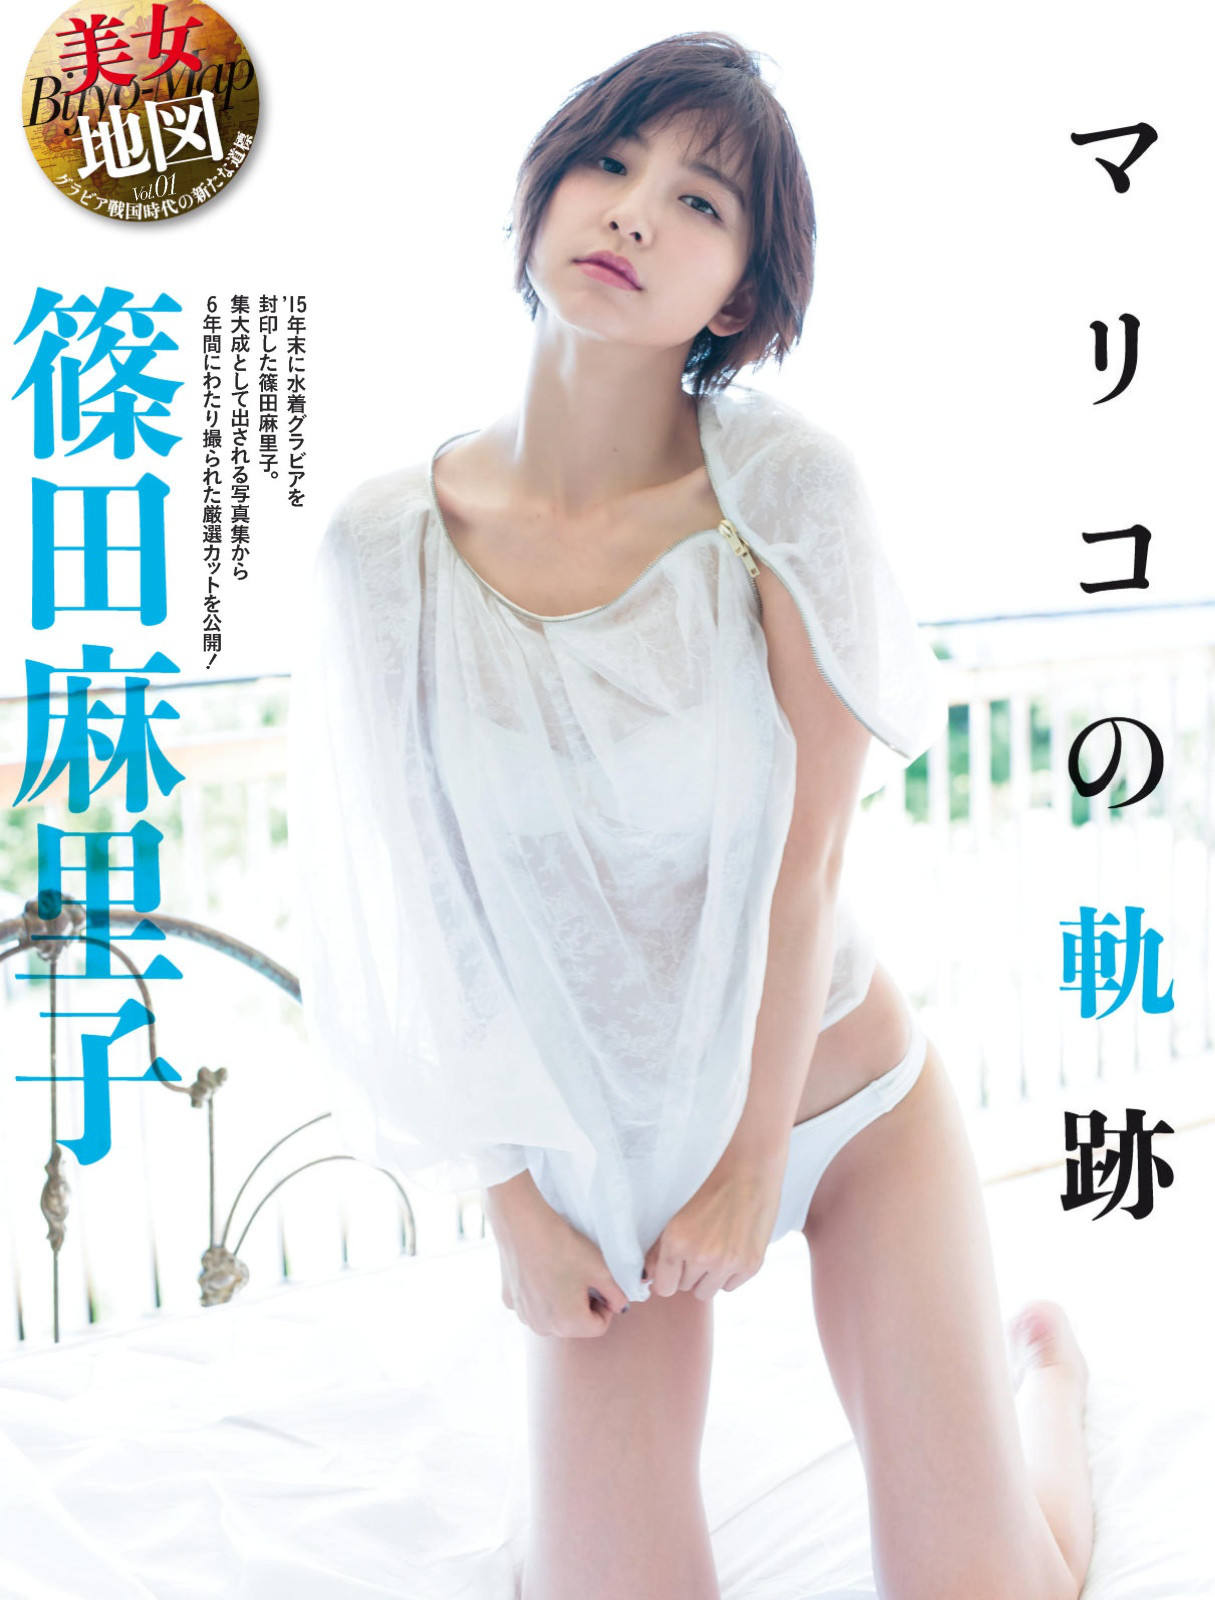 Shinoda Mariko 篠田麻里子 Akb48 Gravure Weekly Spa Magazine 16 03 10 05 Idol Gravureprincess Date